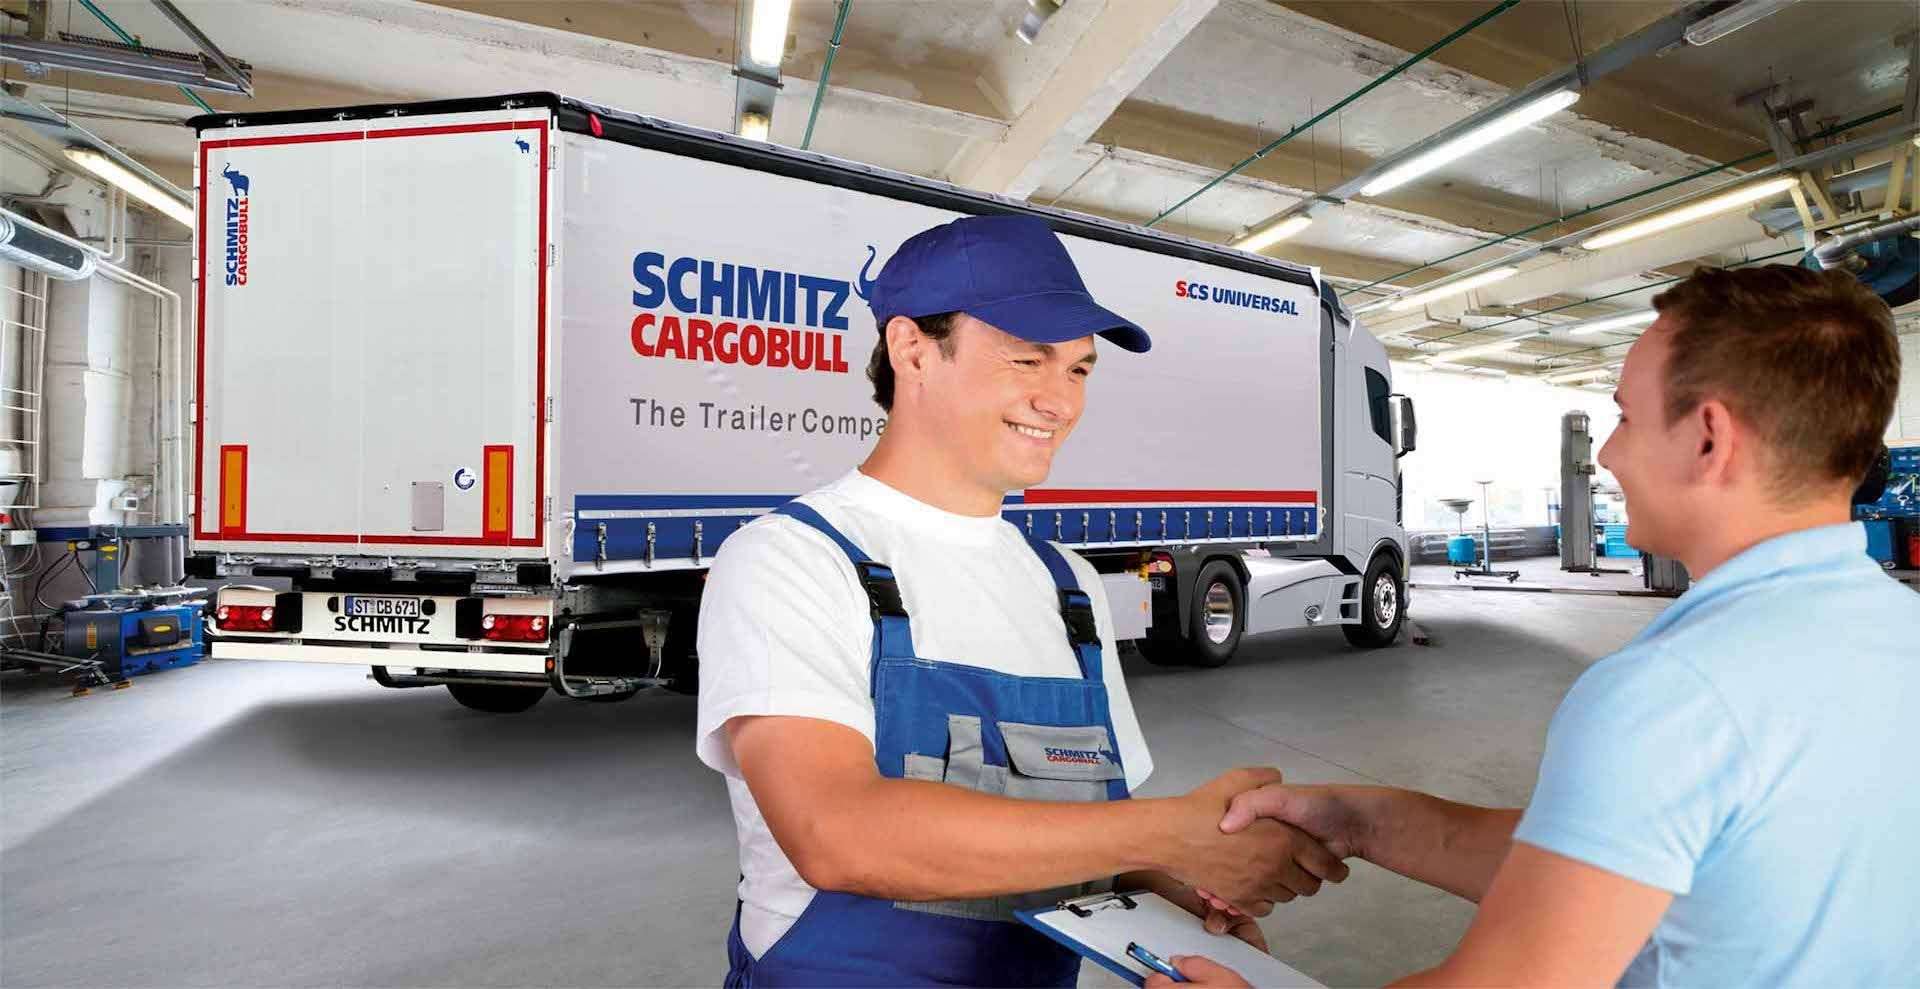 Schmitz Cargobull services